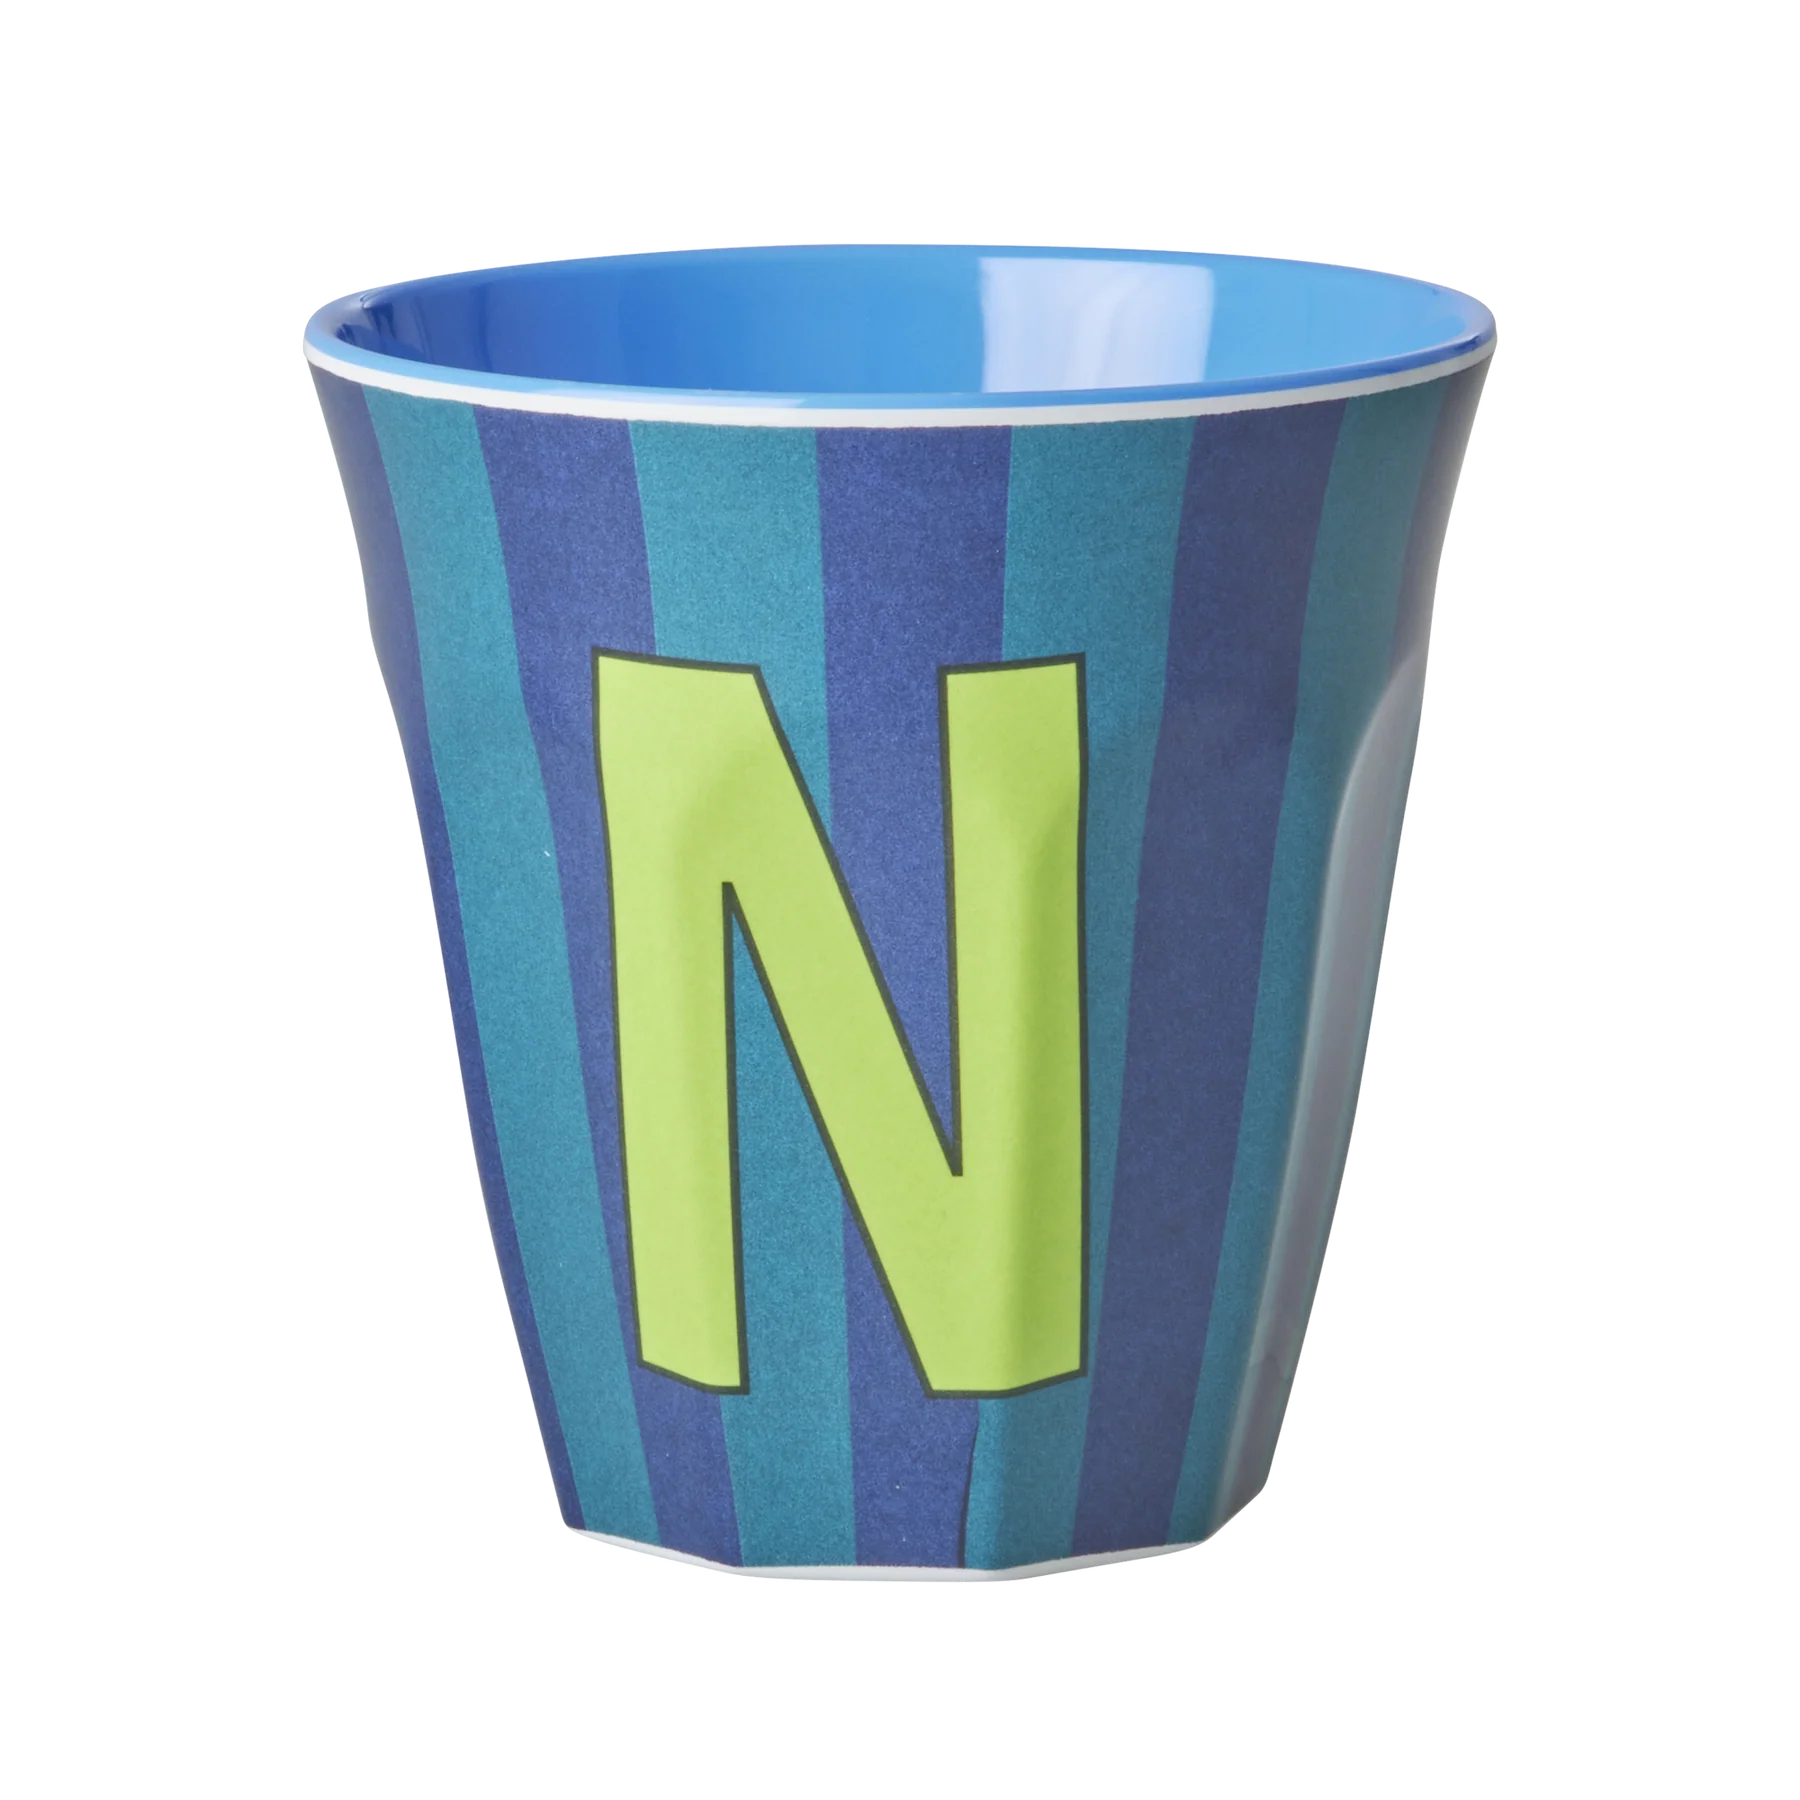 N Blue Stripe Melamine Cup - Rice DK